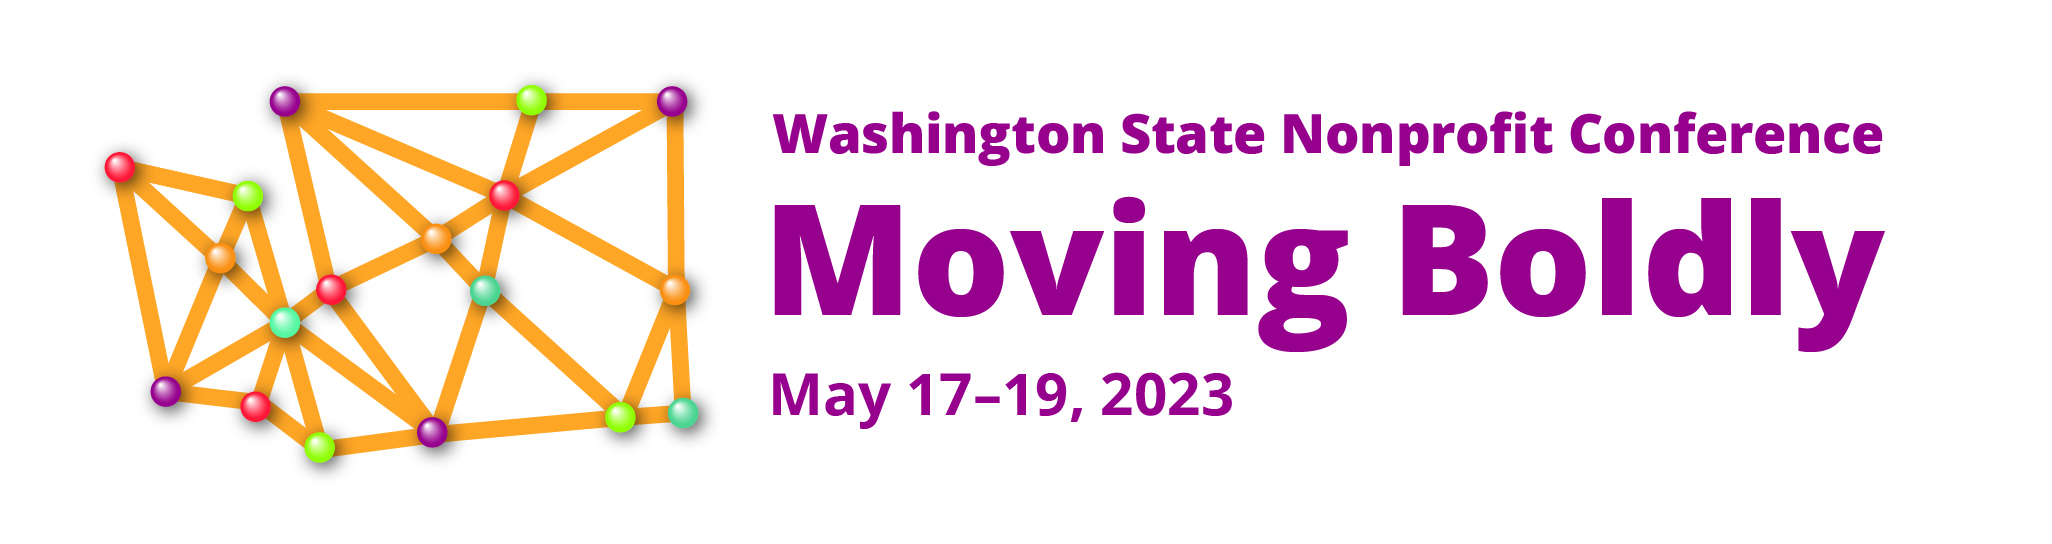 Washington State Nonprofit Conference, Moving Boldly, Mat 17-19,2023